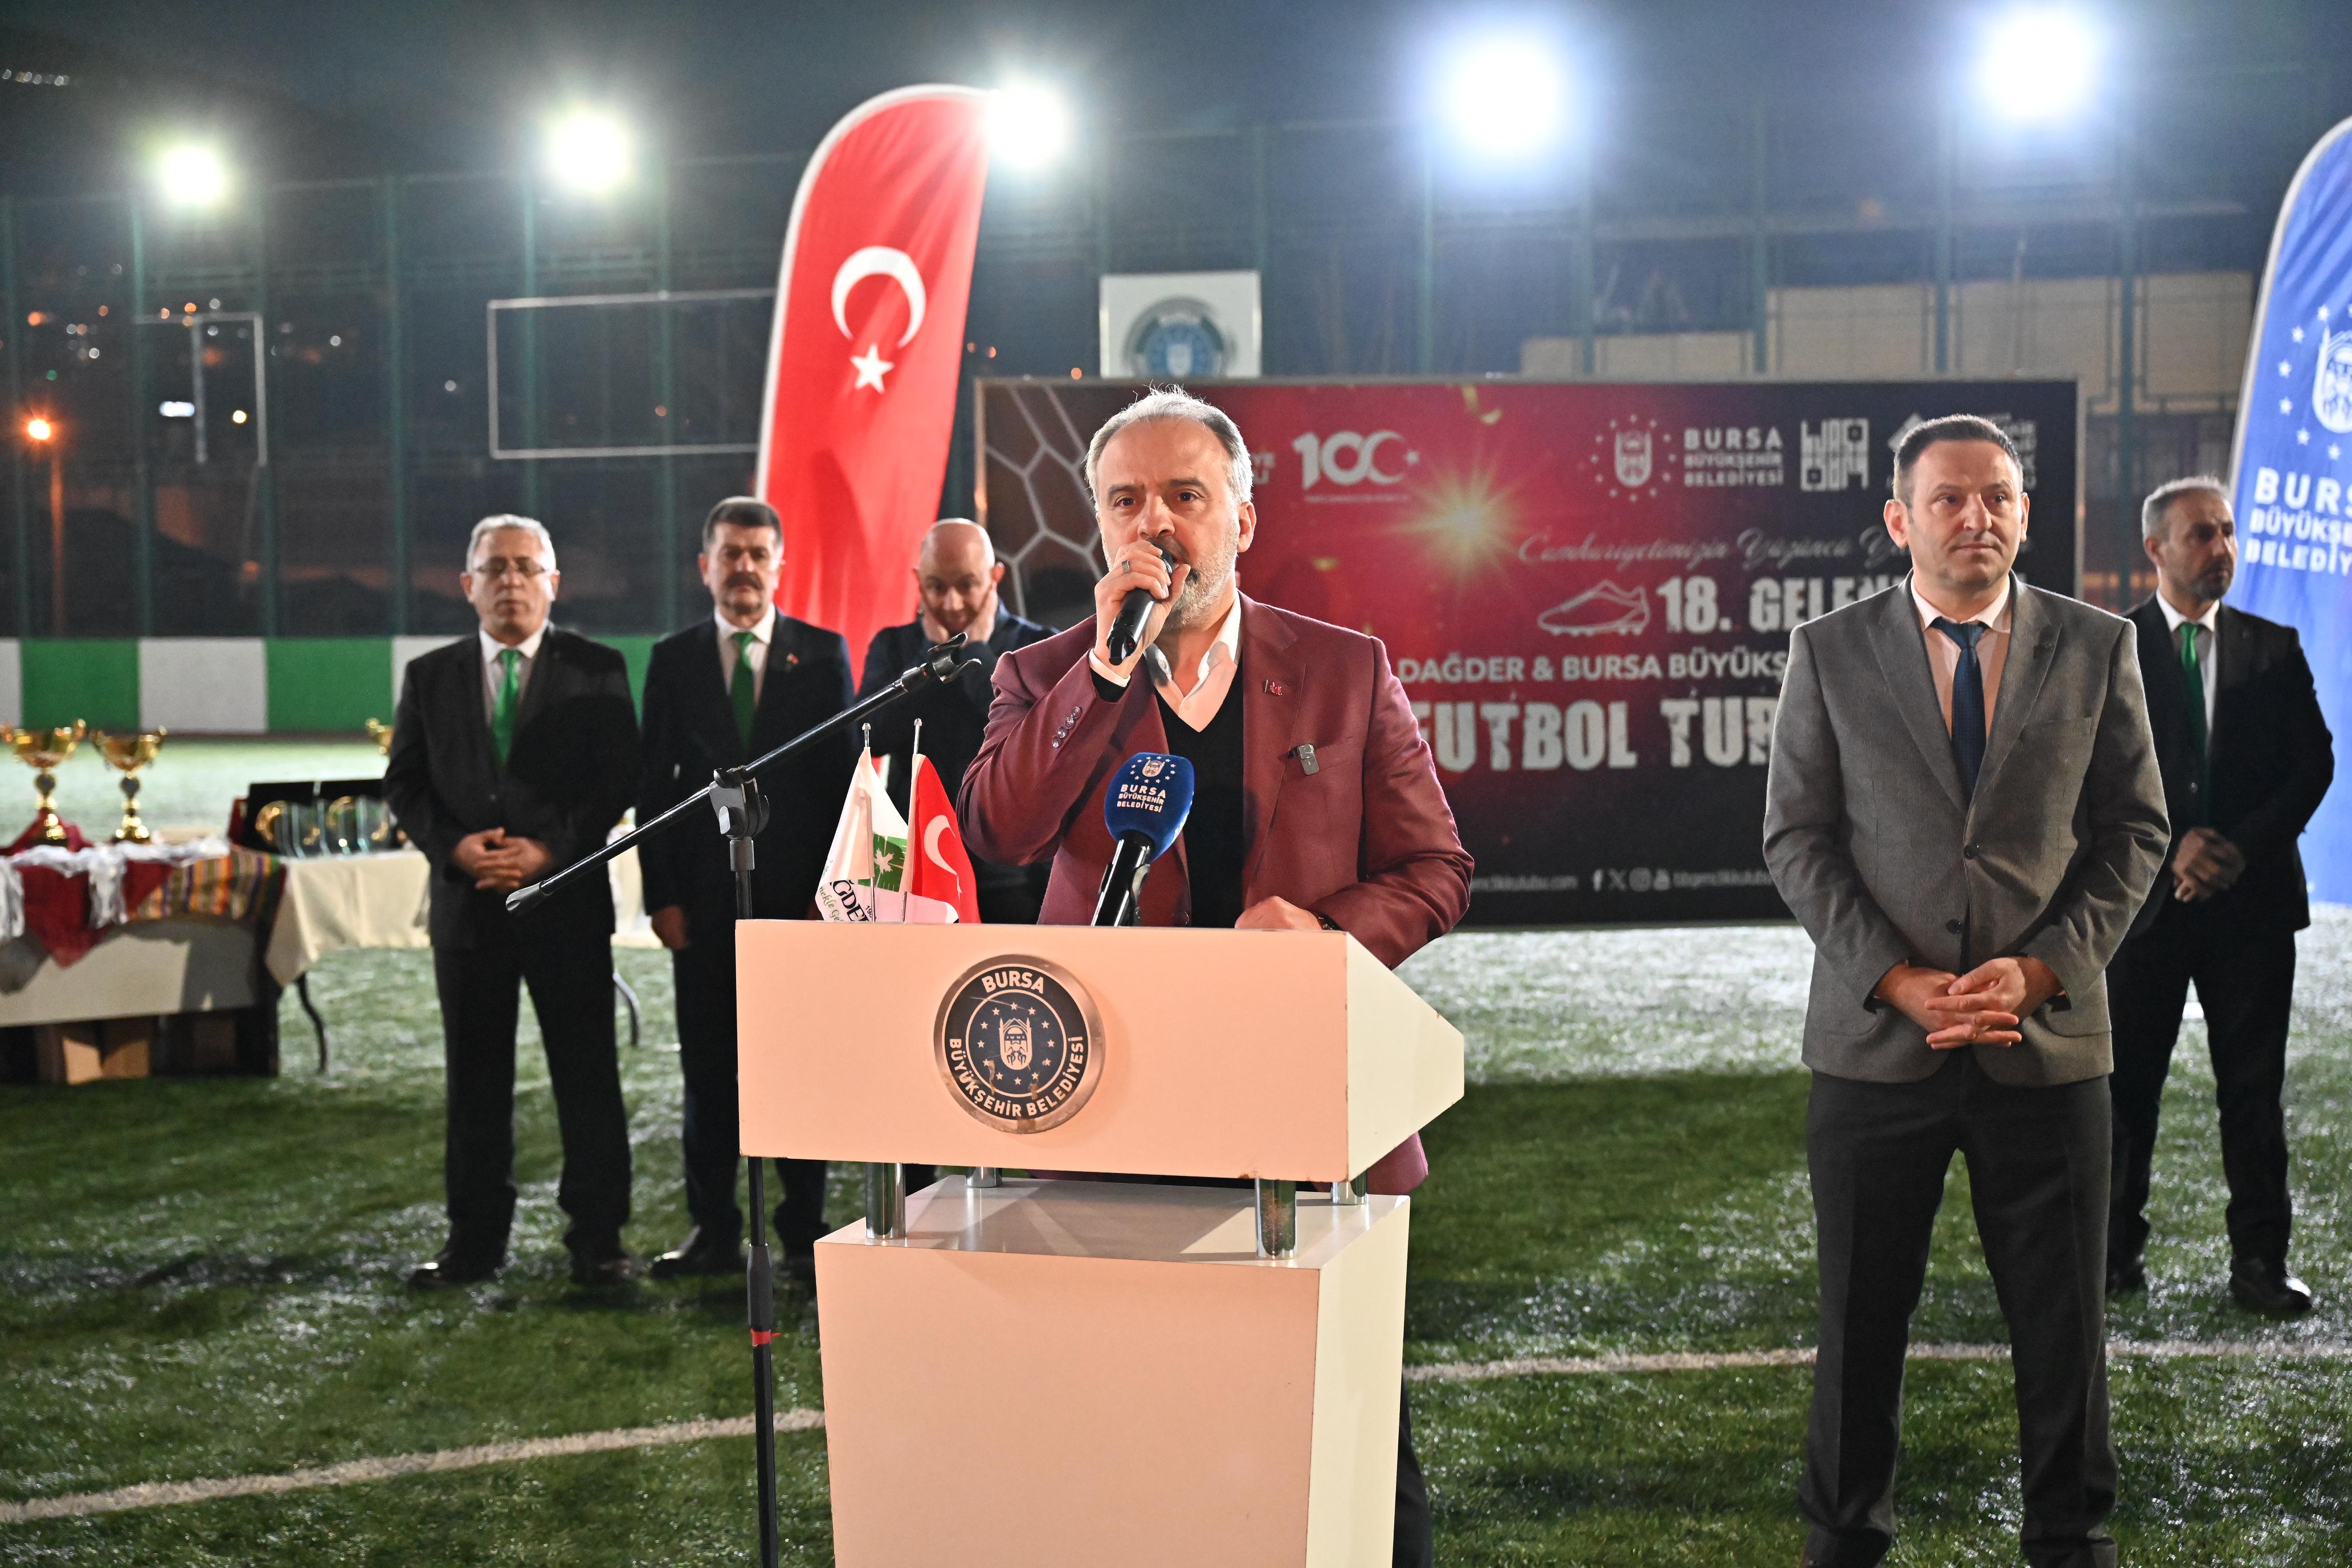 Başkan Aktaş: “Dağder Futbol Turnuvası’na her sene destek oluyoruz”